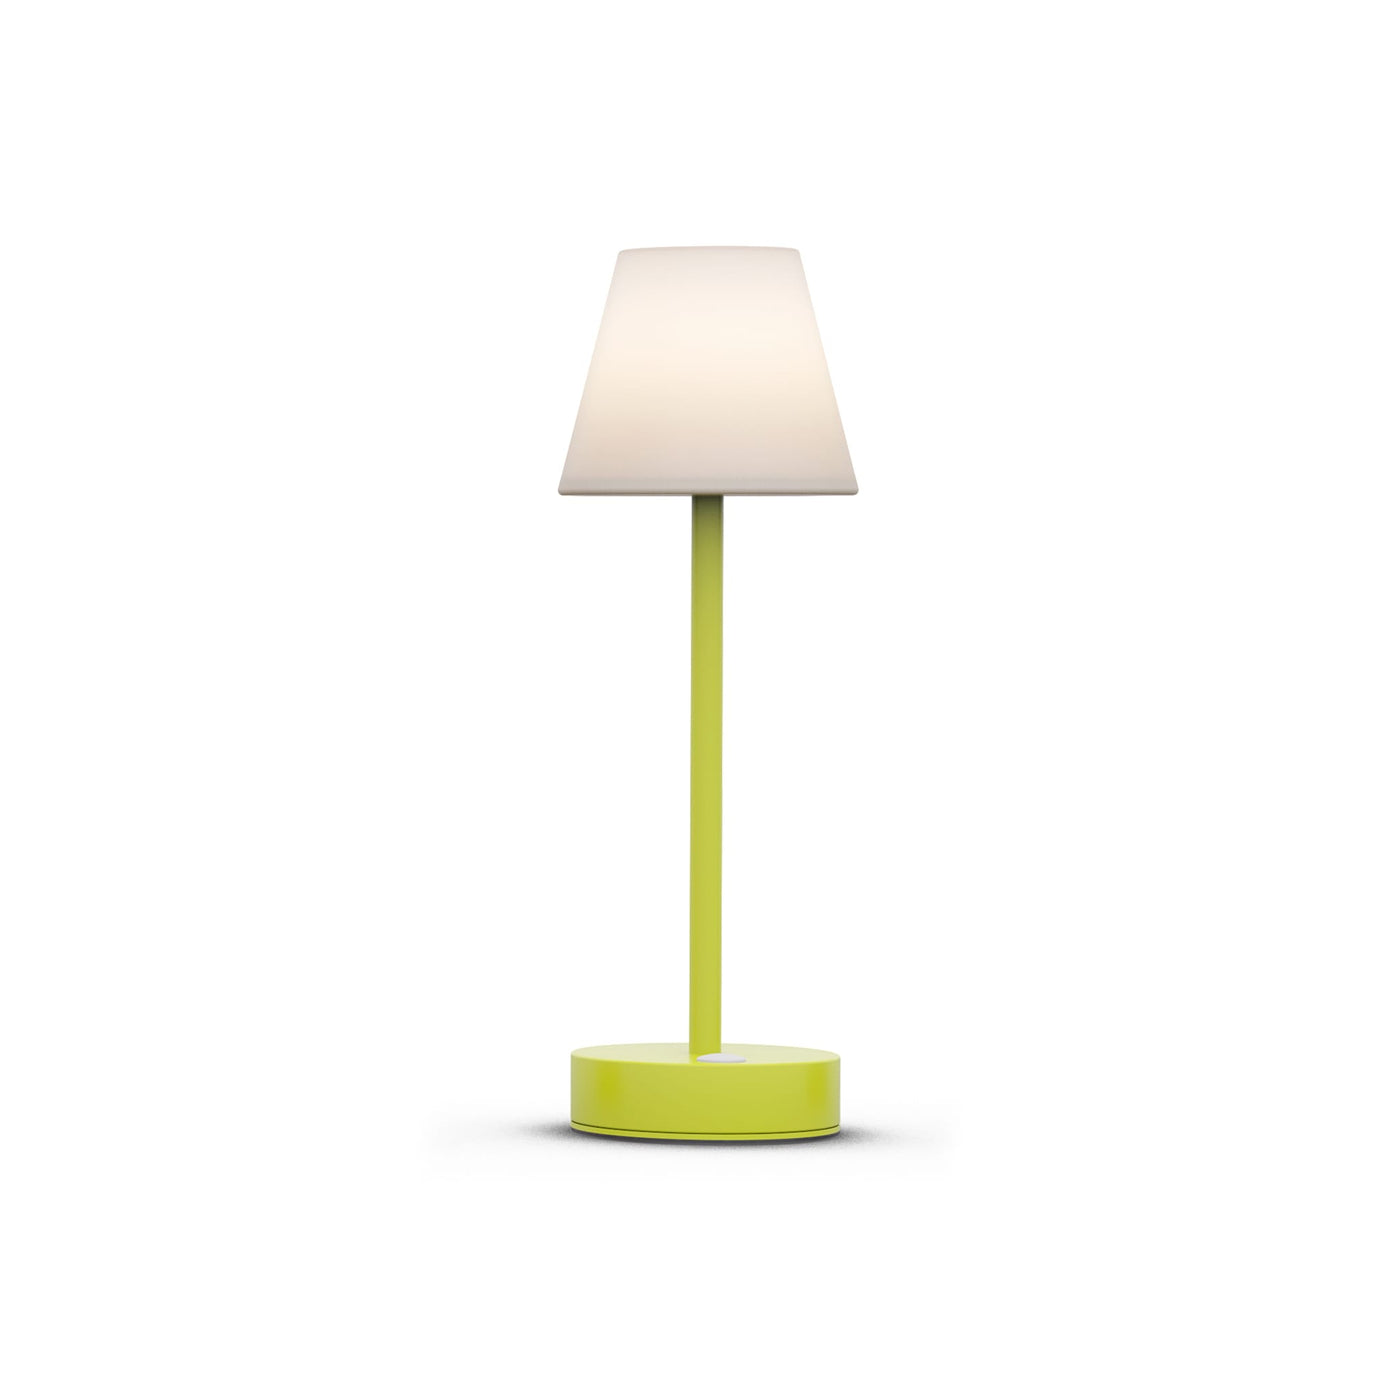 Lola Slim 30 de Newgarden : lampe LED RVB, forme unique, bouton tactile, intensité réglable. Parfaite pour un éclairage de table élégant et fonctionnel. Lime.